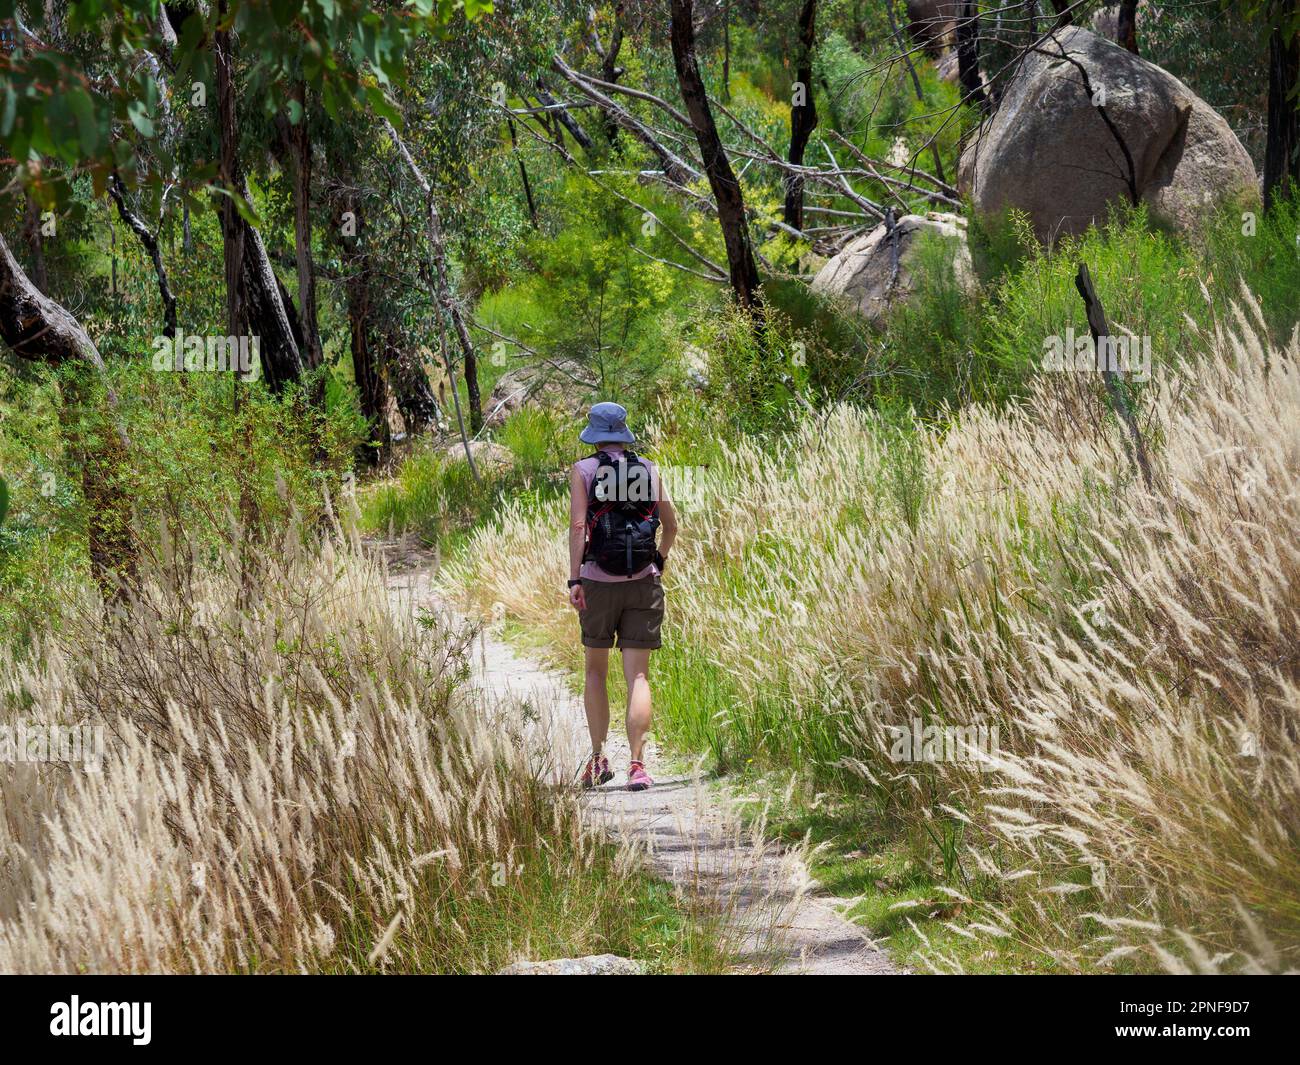 Australie, Queensland, parc national de Girraween, vue arrière de la femme randonnée sur la piste en pleine nature Banque D'Images